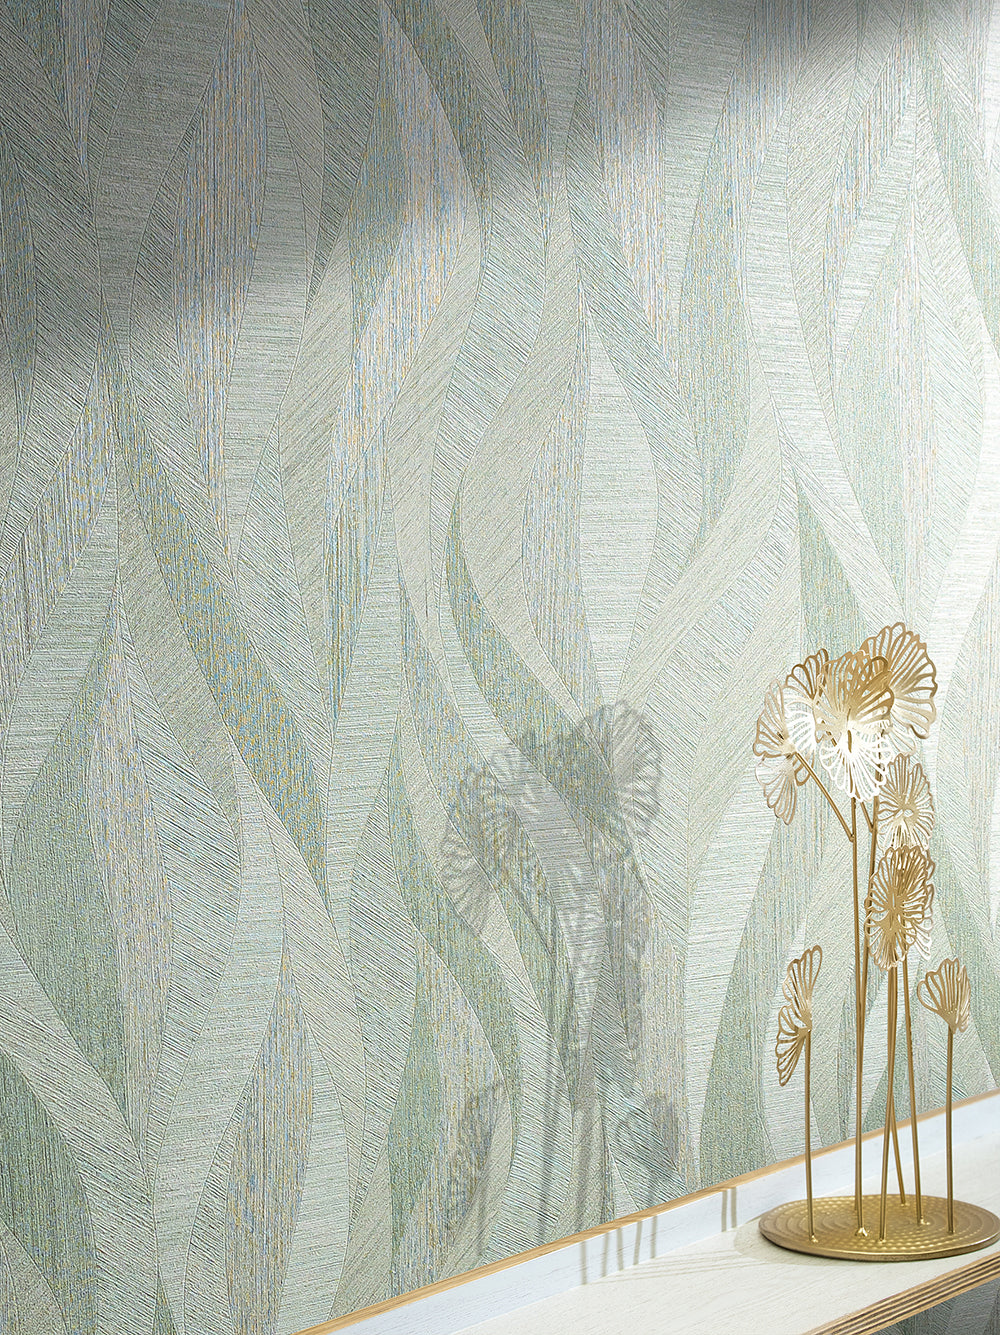 Papis Loveday - Waves botanical wallpaper Marburg    